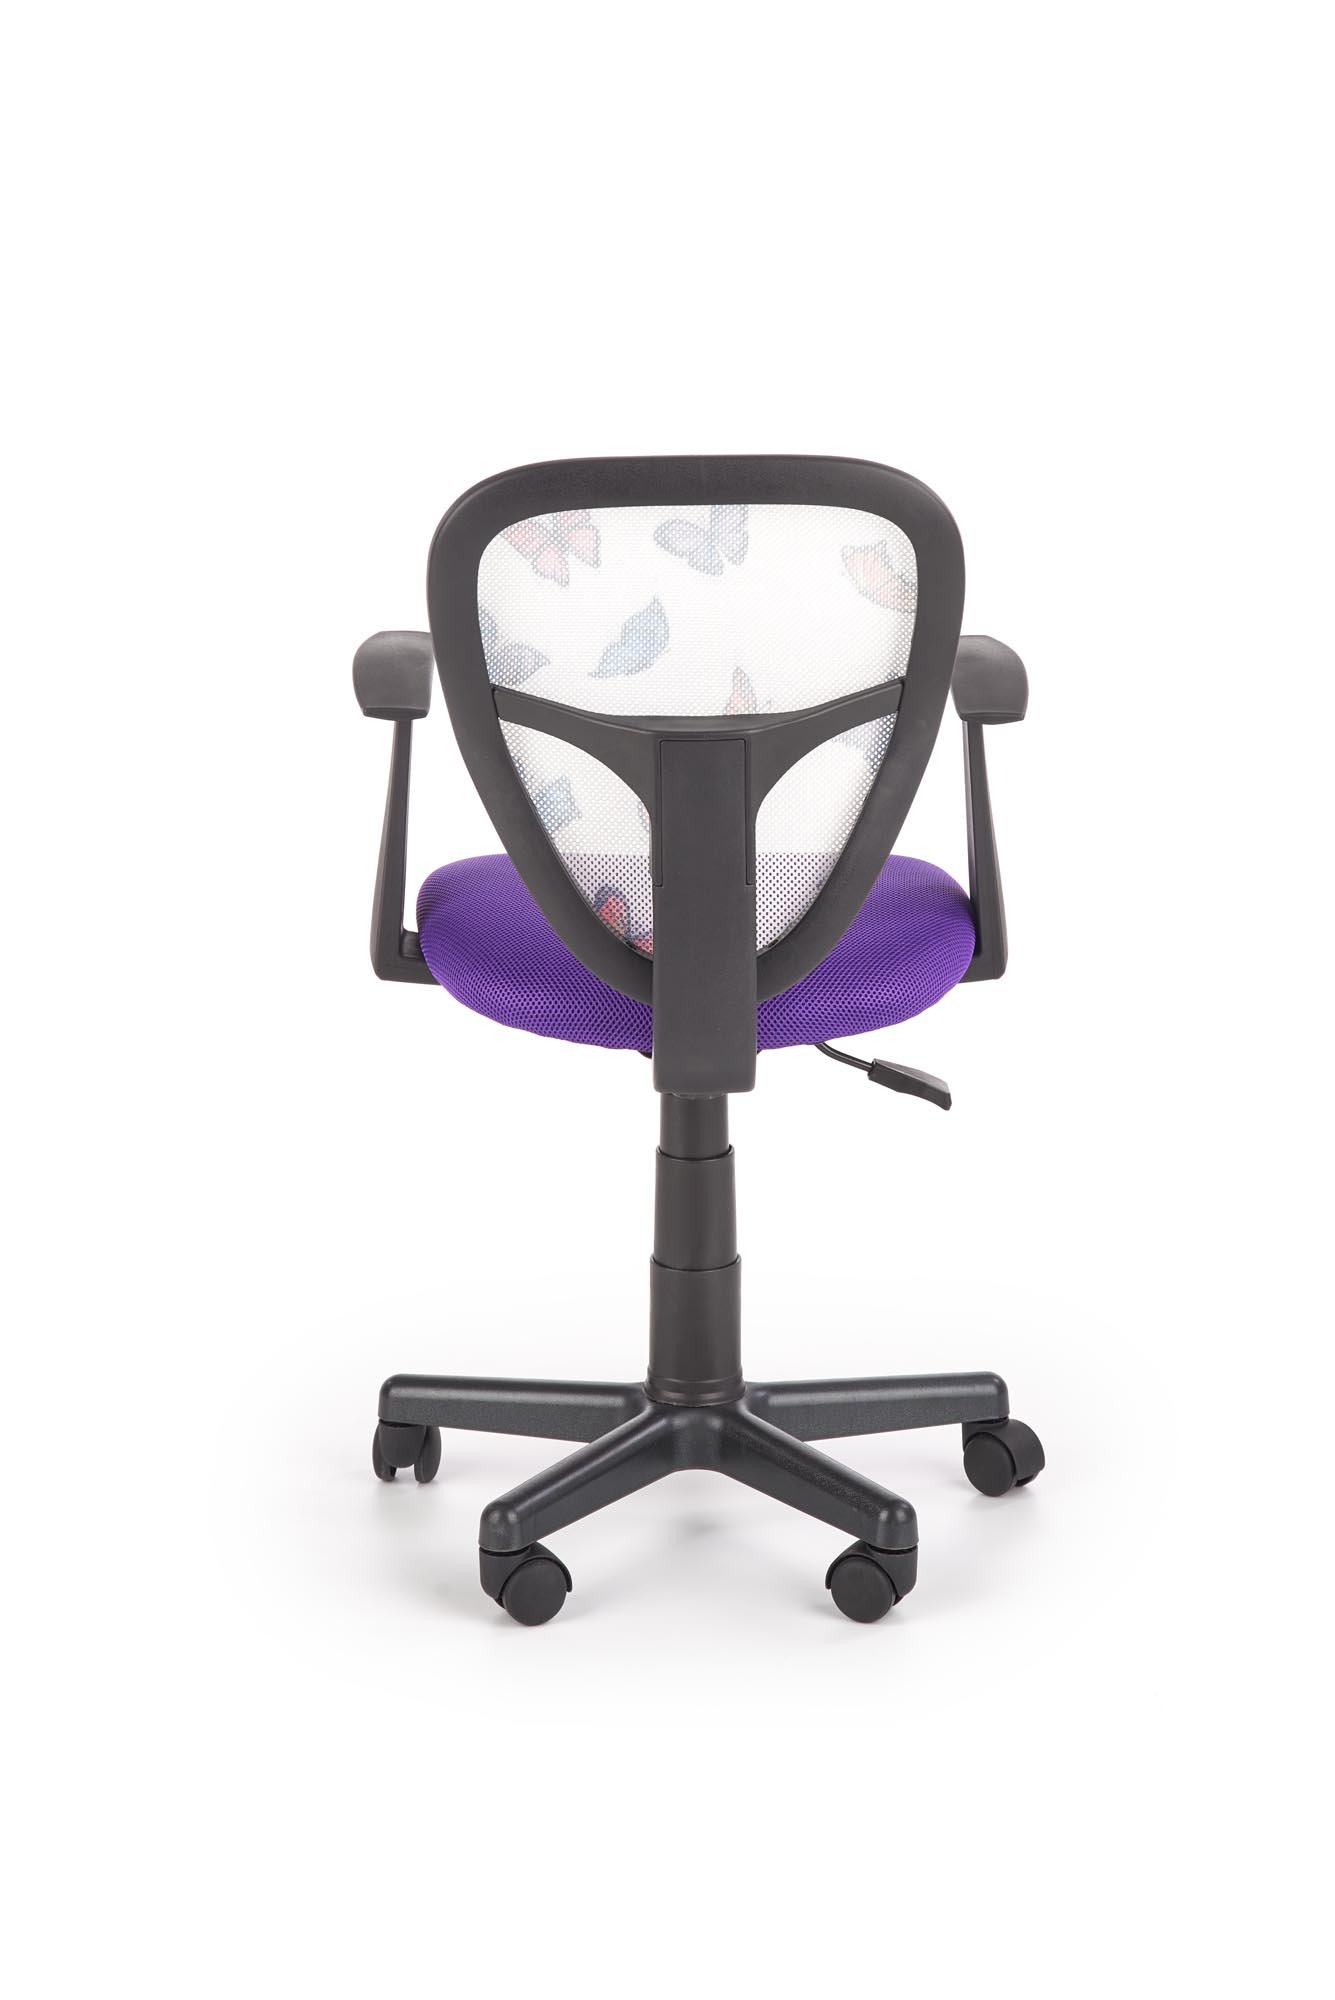 Vaikiška kėdė SPIKER, violetinė - 2